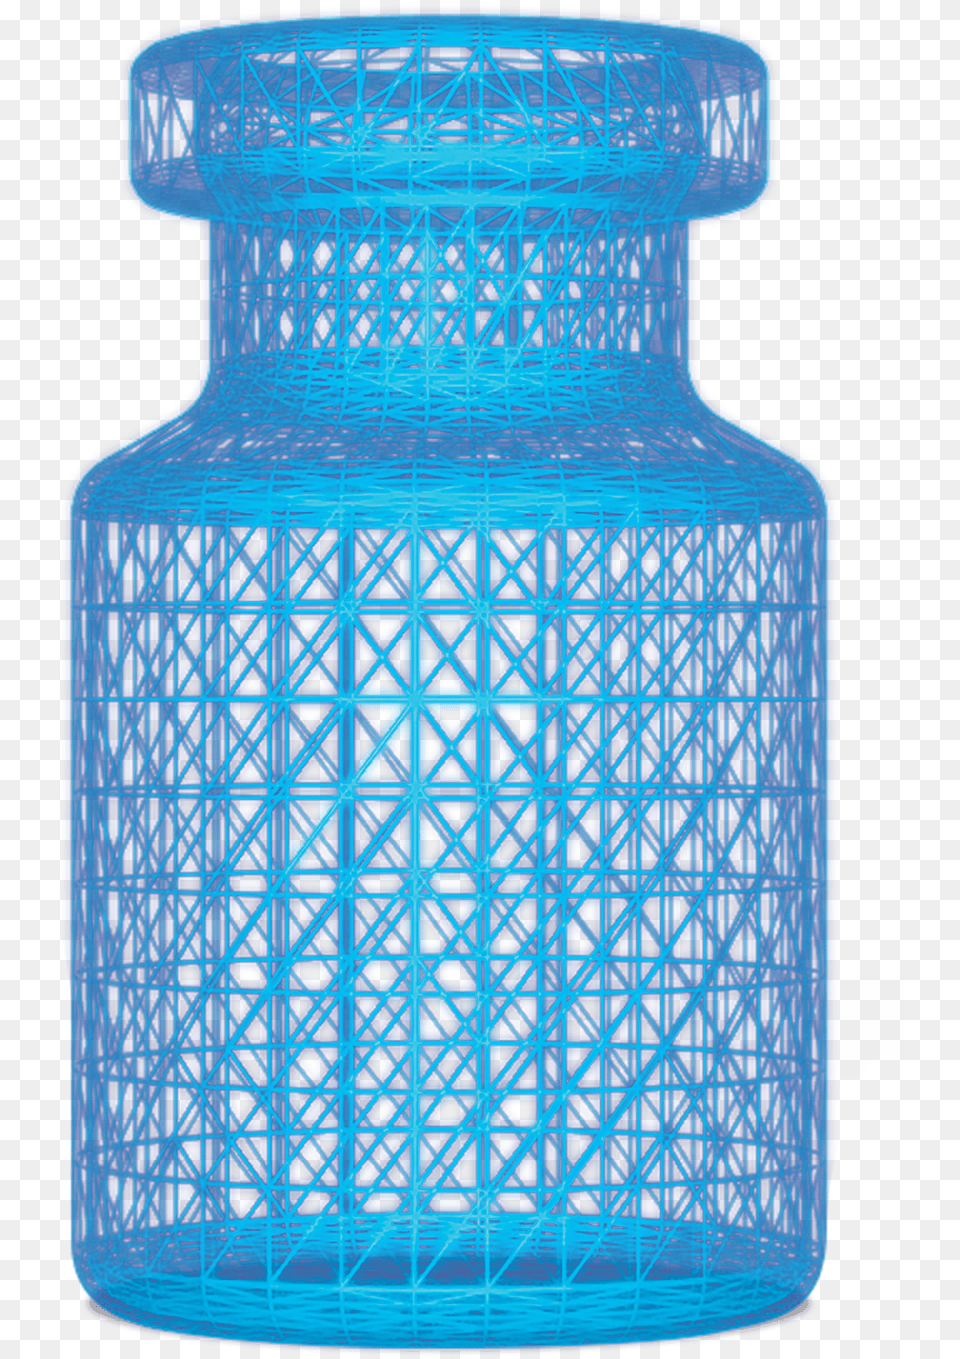 Vialex Vial Vase, Jar, Bottle, Jug, Pottery Png Image